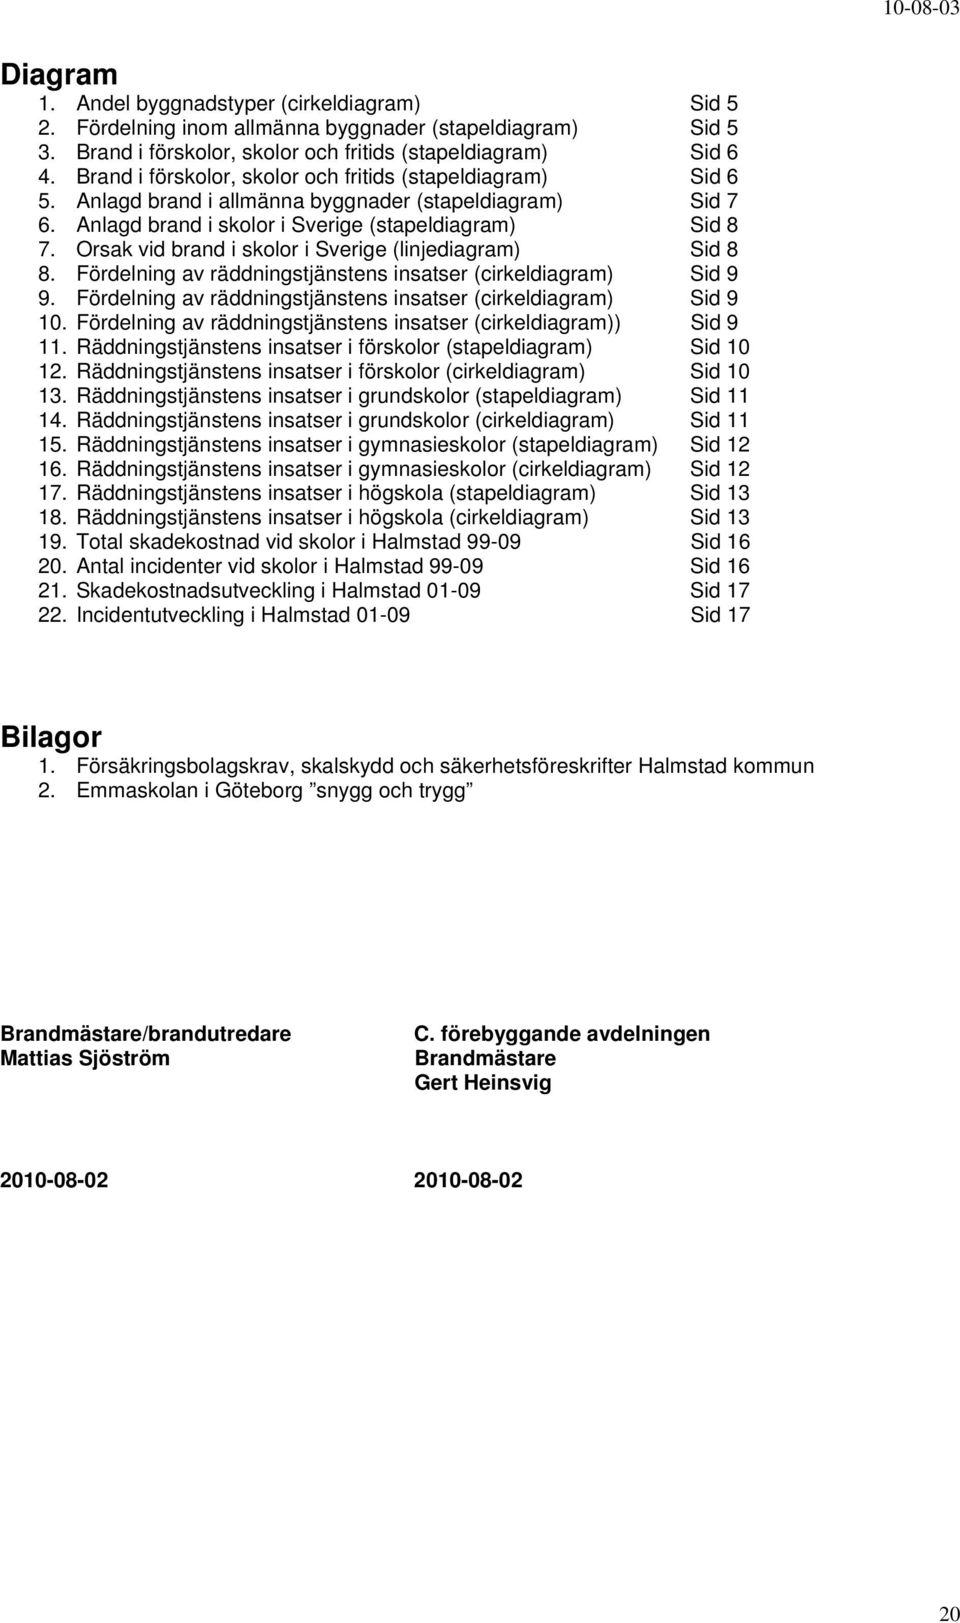 Orsak vid i skolor i Sverige (linjediagram) Sid 8 8. Fördelning av räddningstjänstens insatser (cirkeldiagram) Sid 9 9. Fördelning av räddningstjänstens insatser (cirkeldiagram) Sid 9 1.